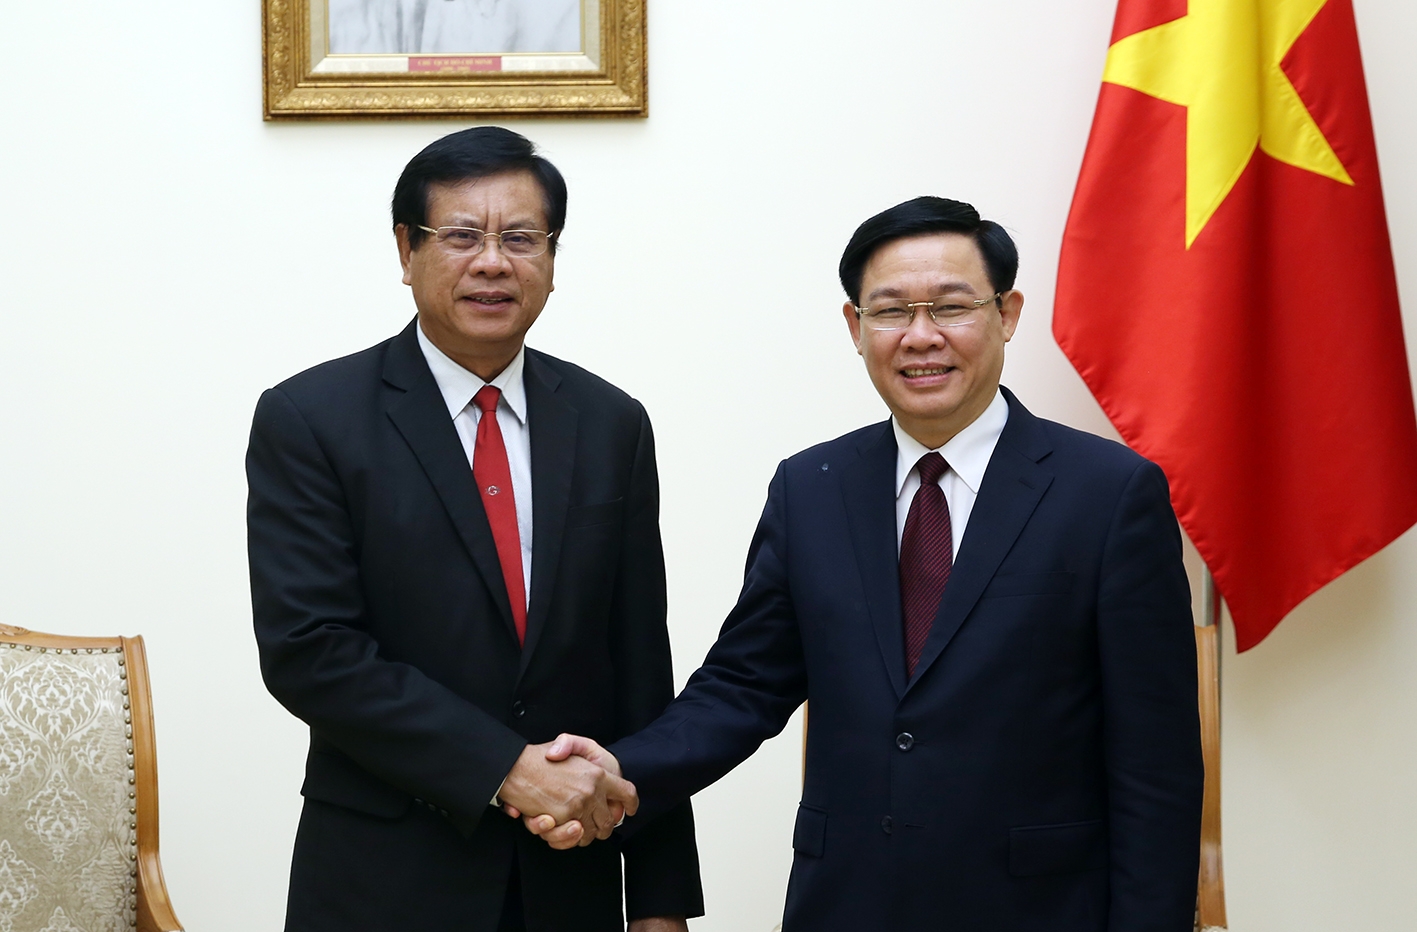 Phó Thủ tướng Vương Đình Huệ tiếp nguyên Thủ tướng Lào